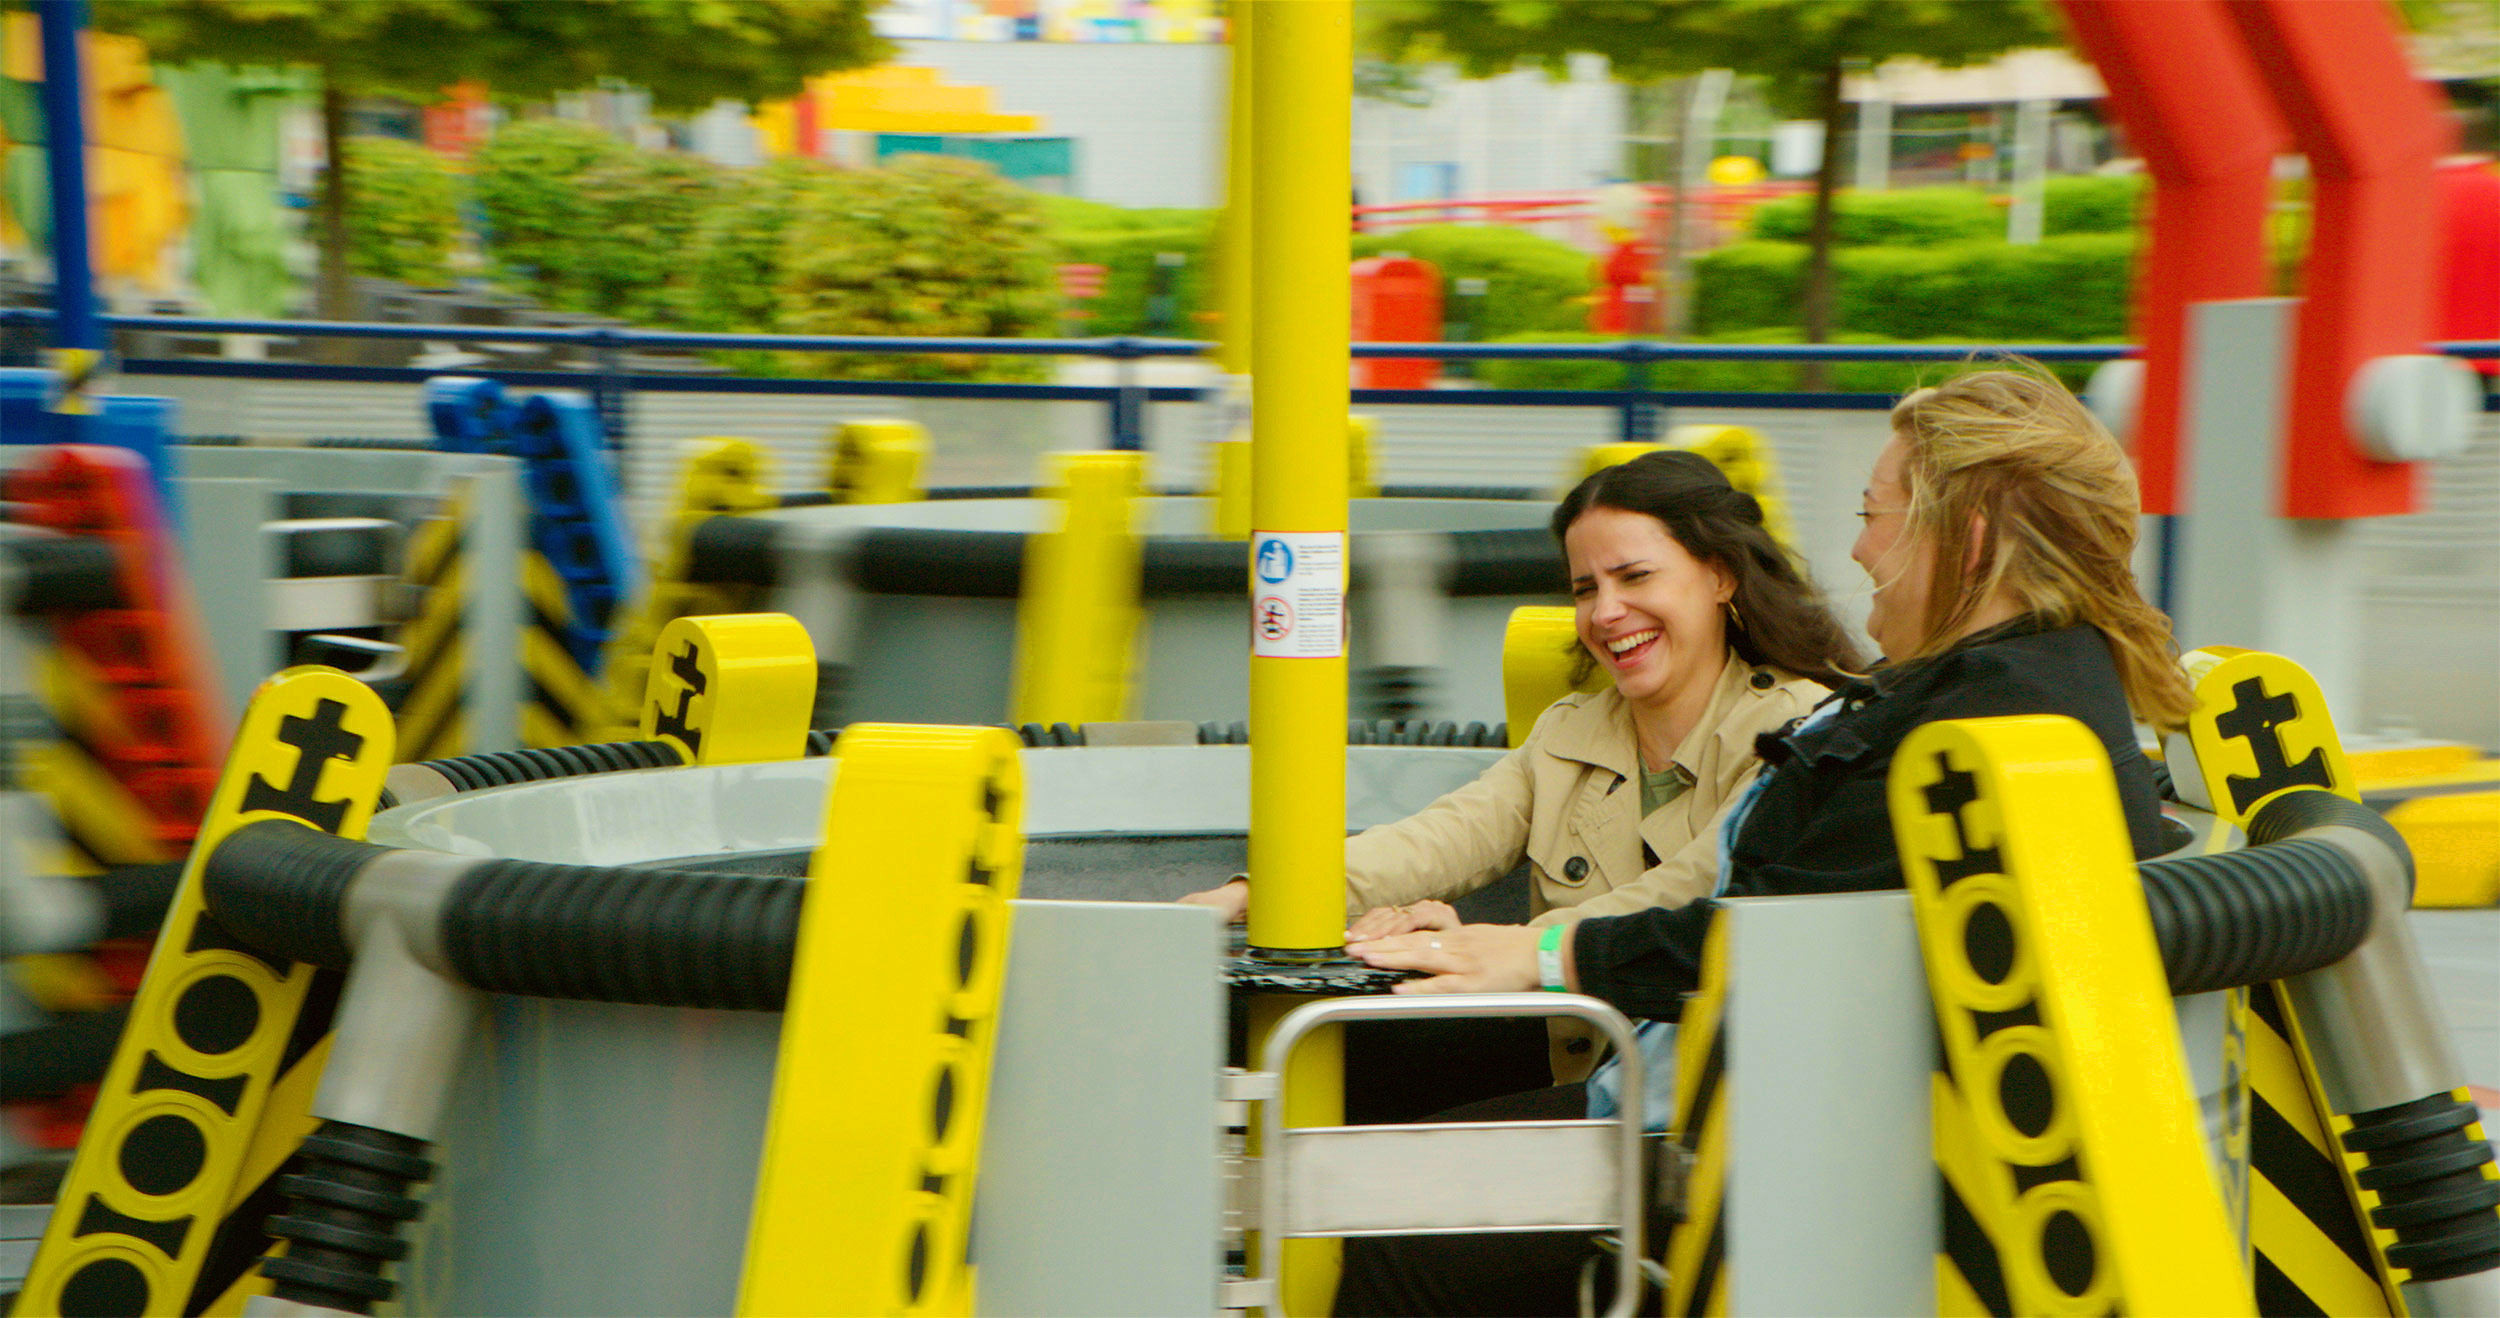 Zwei Frauen, die in der Technoschleuder des LEGOLAND Deutschlands sitzen, während sie ihre Hände an der Stange in der Mitte festhalten und lachen. Das Fahrgeschäft besteht aus mehreren runden Elementen auf Drehscheiben mit einer Stange in der Mitte.